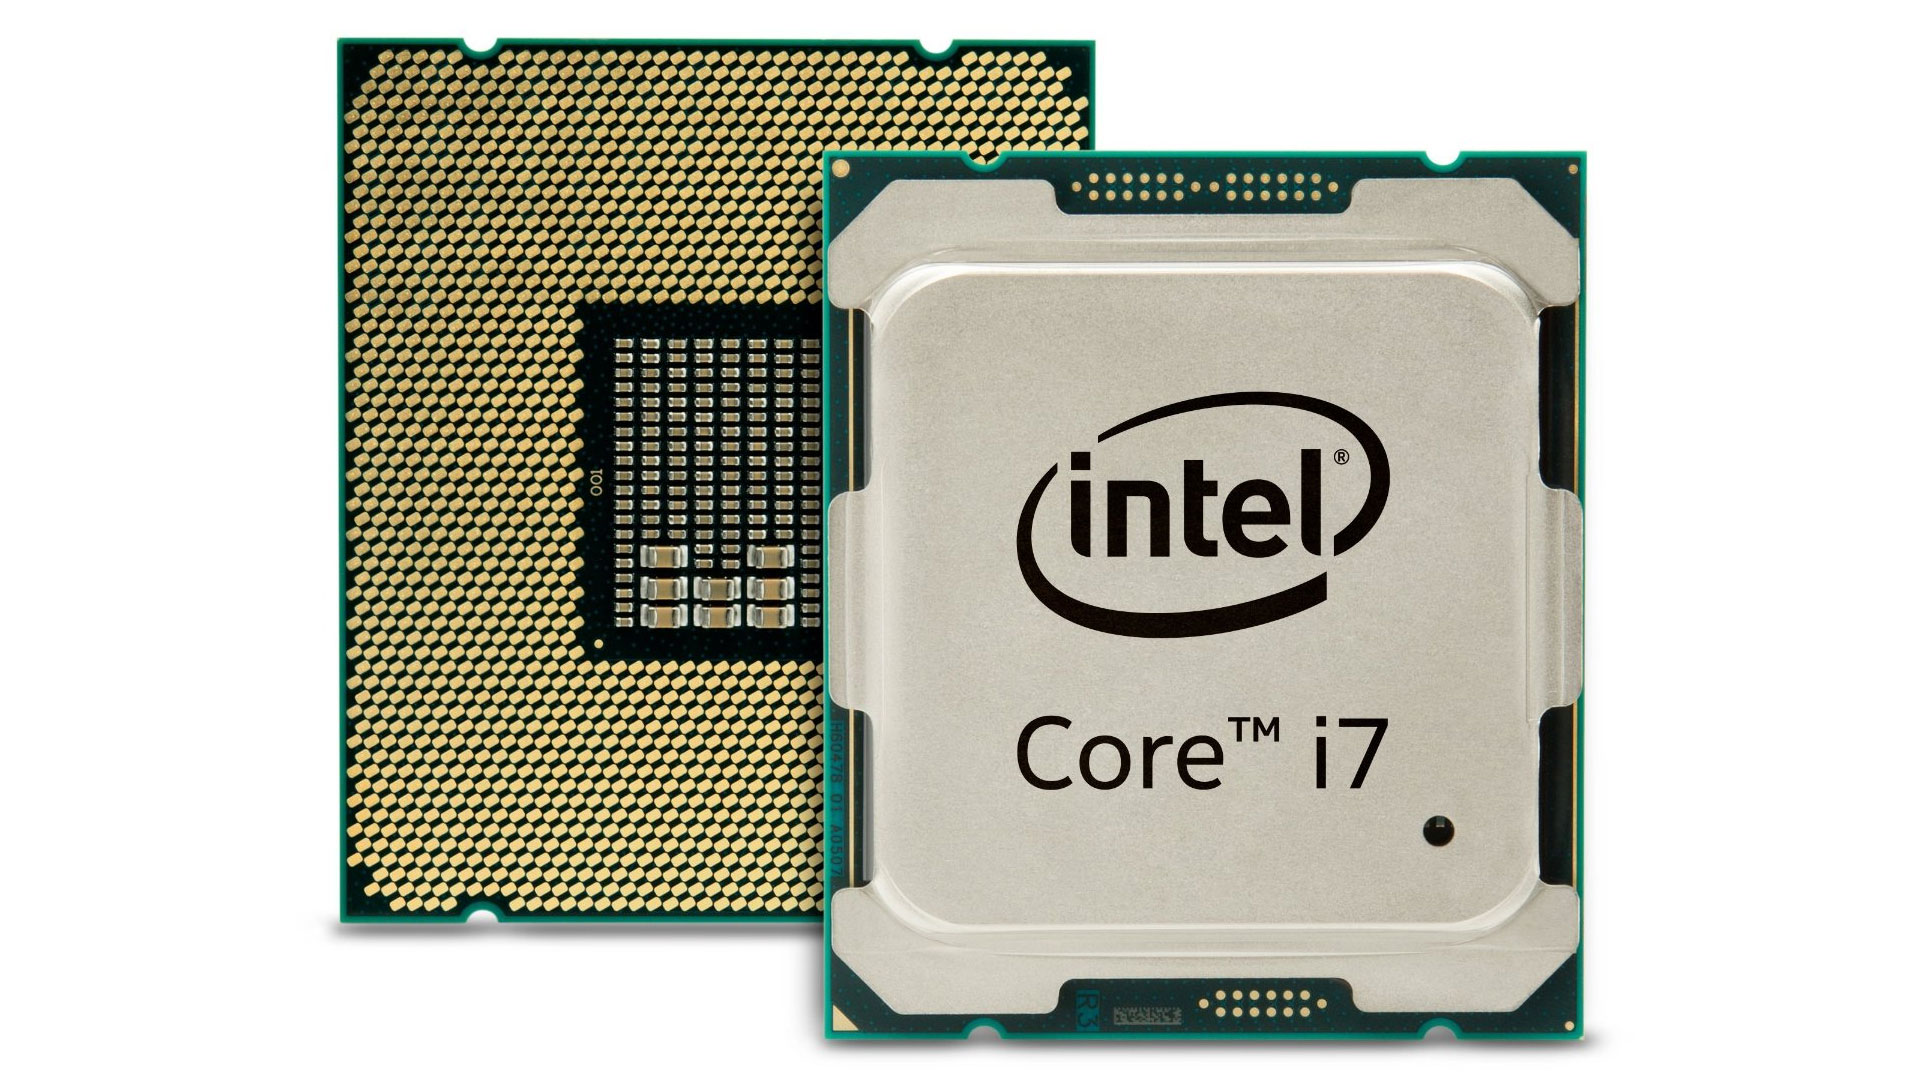 Tìm hiểu về Chip Core i7 của Intel